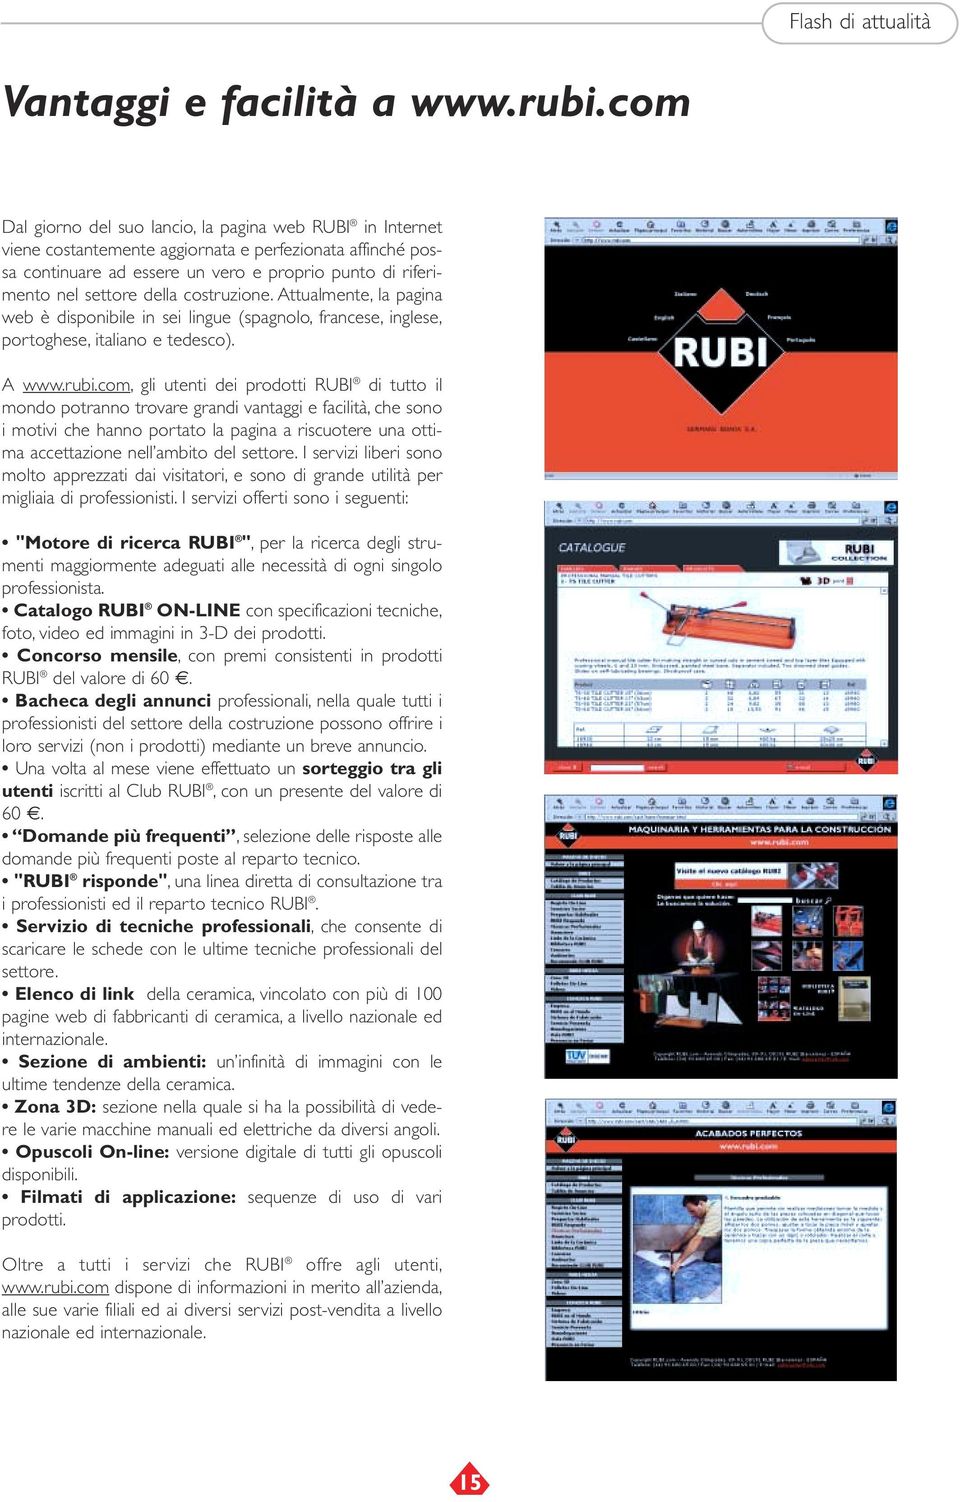 della costruzione. Attualmente, la pagina web è disponibile in sei lingue (spagnolo, francese, inglese, portoghese, italiano e tedesco). A www.rubi.